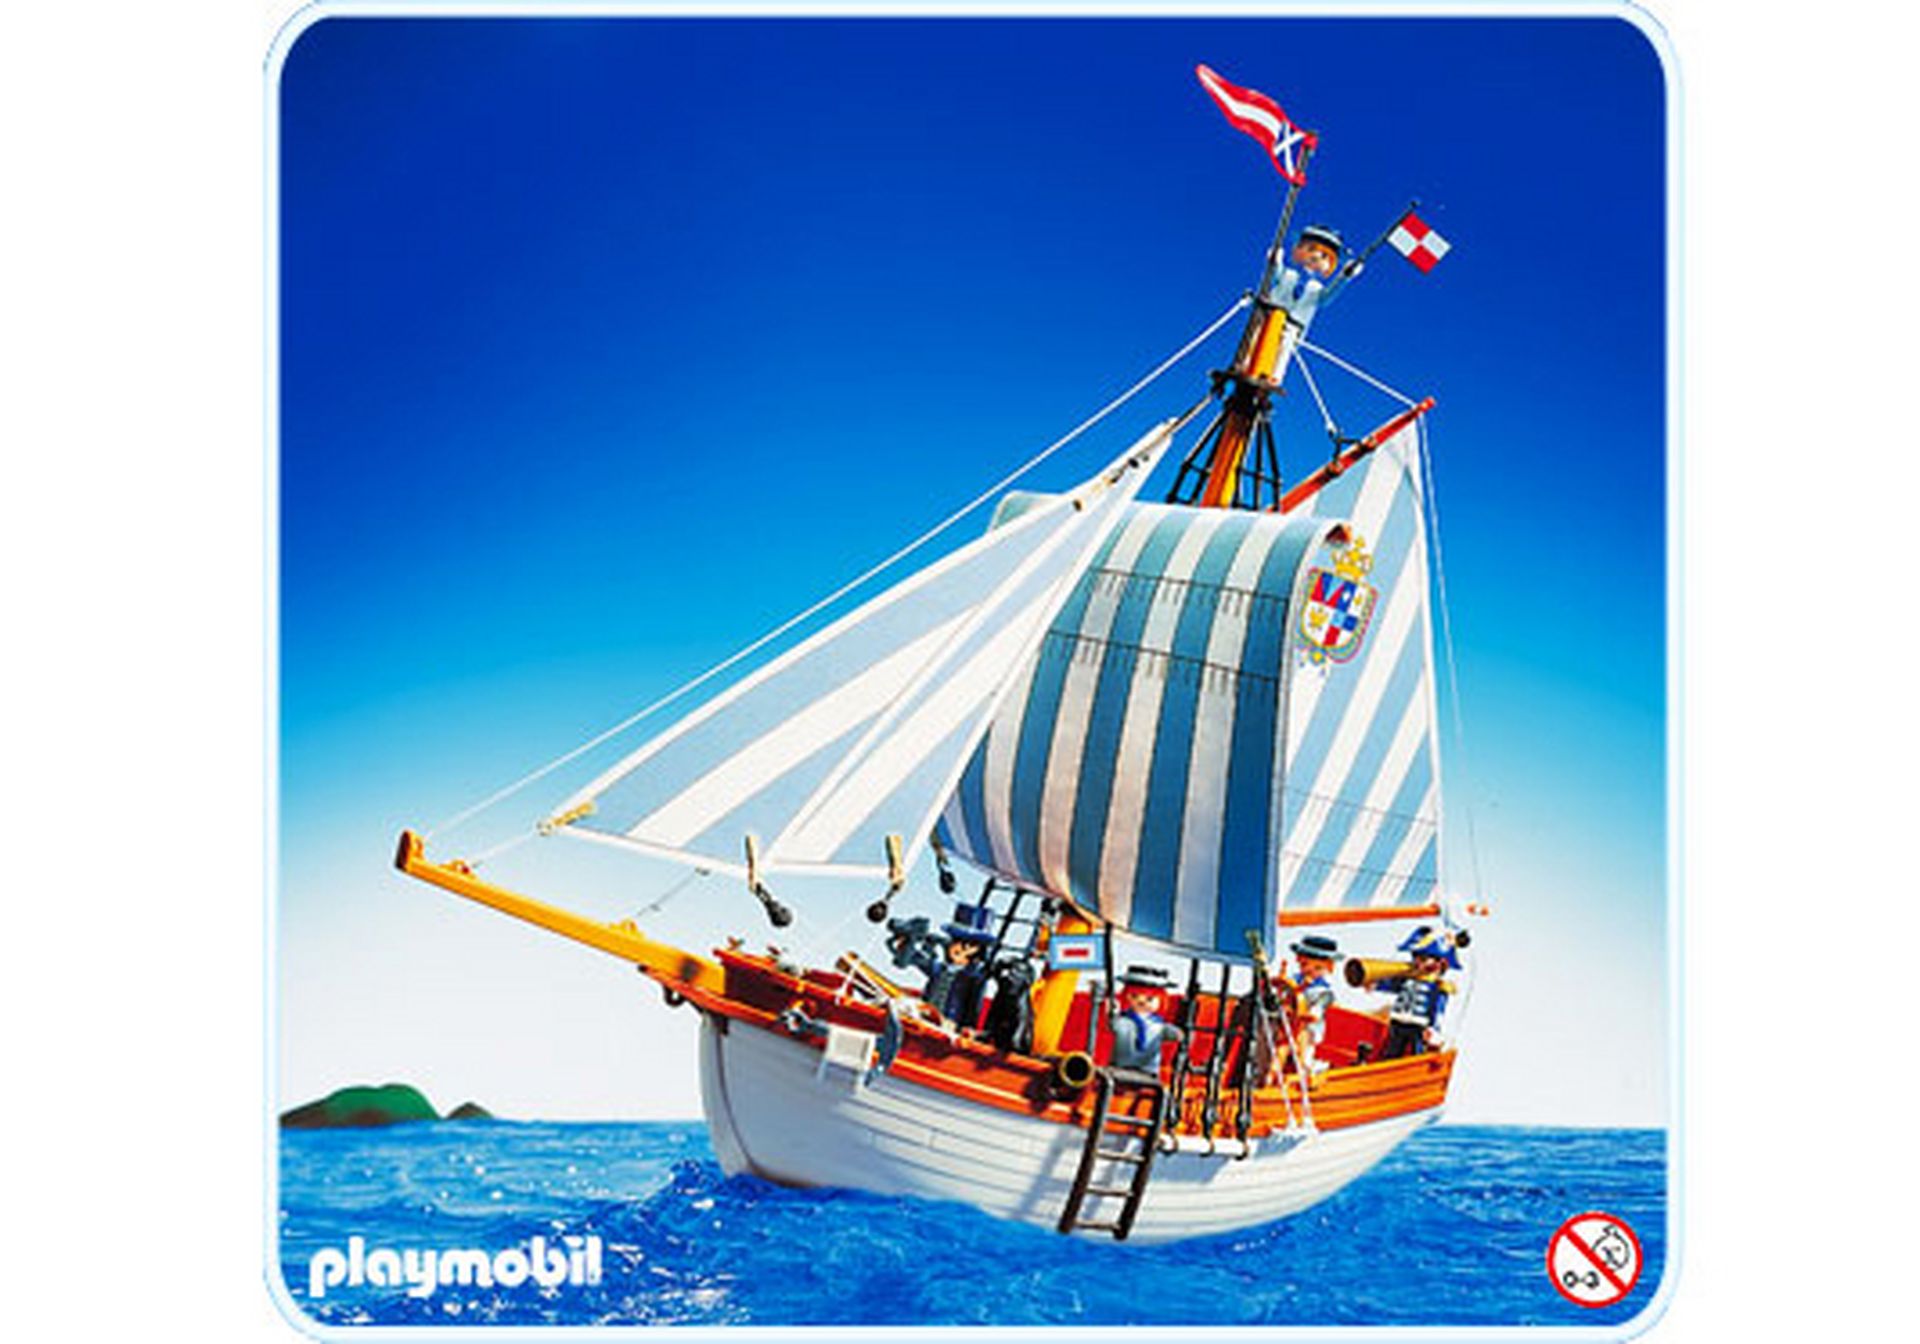 Playmobil Mastring Halter Segel für Piratenschiff 3940 Garde Boot 3740 